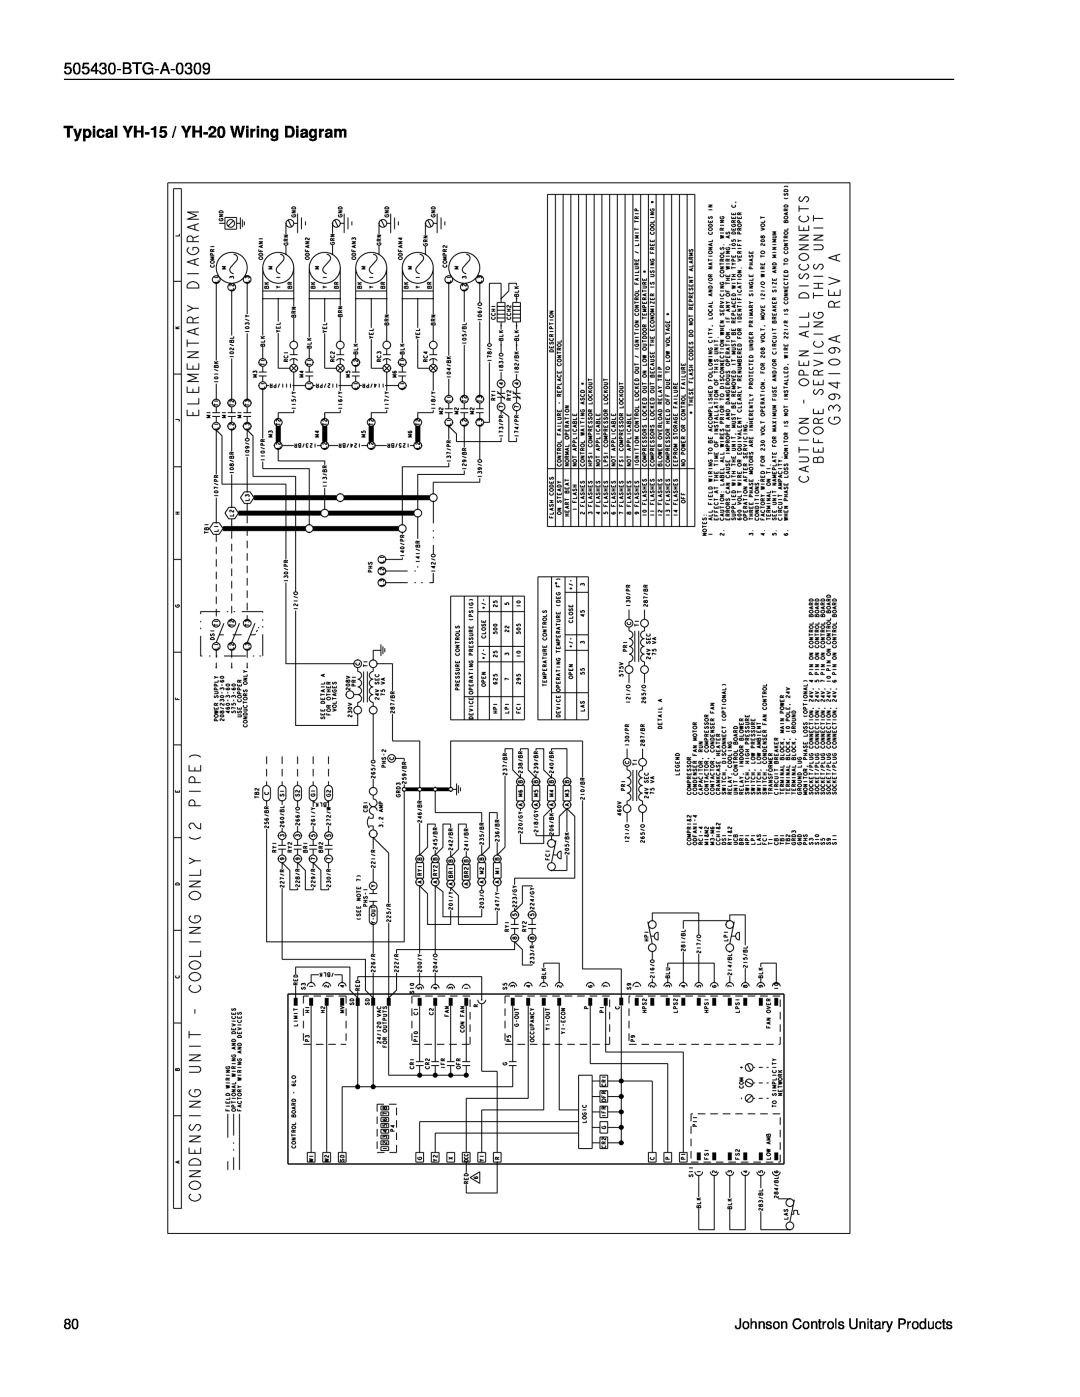 Johnson Controls R-410A manual Typical YH-15 / YH-20Wiring Diagram, BTG-A-0309 